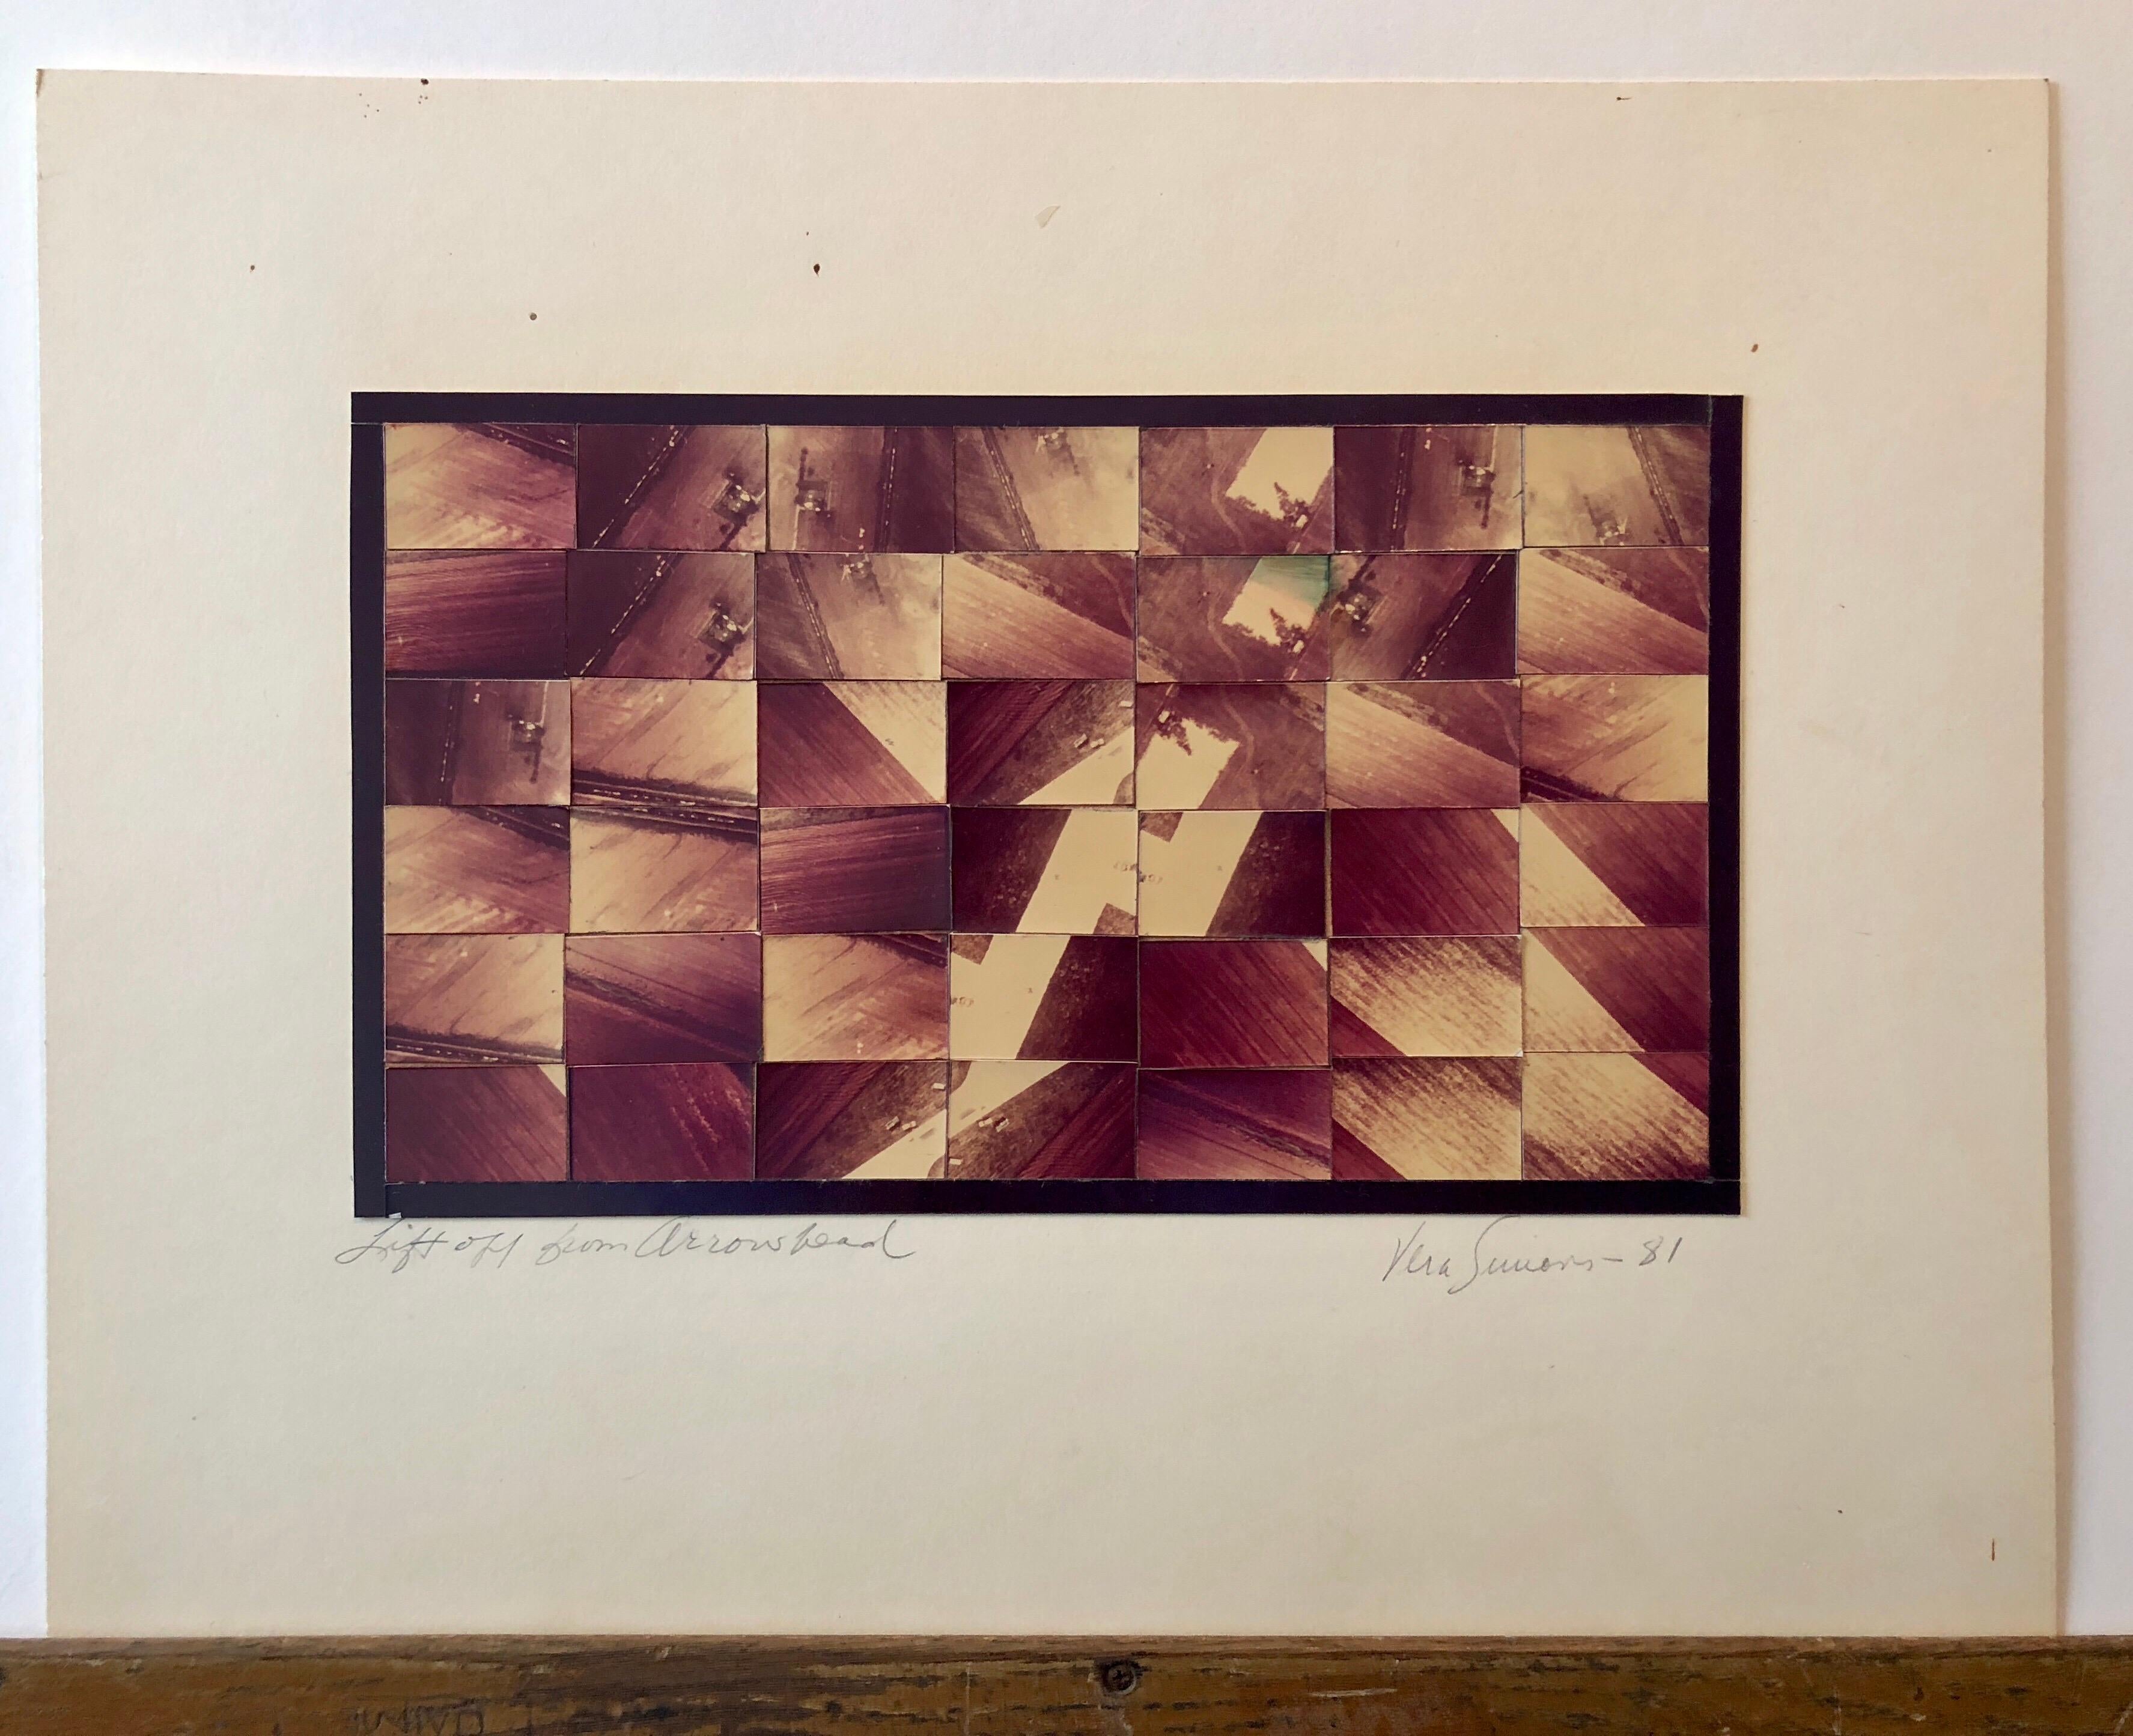 Celle-ci représente un paysage aérien et s'intitule Liftoff from Arrowhead.

SIMONS, Vera (1920 - 2012)
Vera Artistics était une pionnière germano-américaine de l'aviation, une aéronaute et une artiste du collage photographique.  Elle a joué un rôle